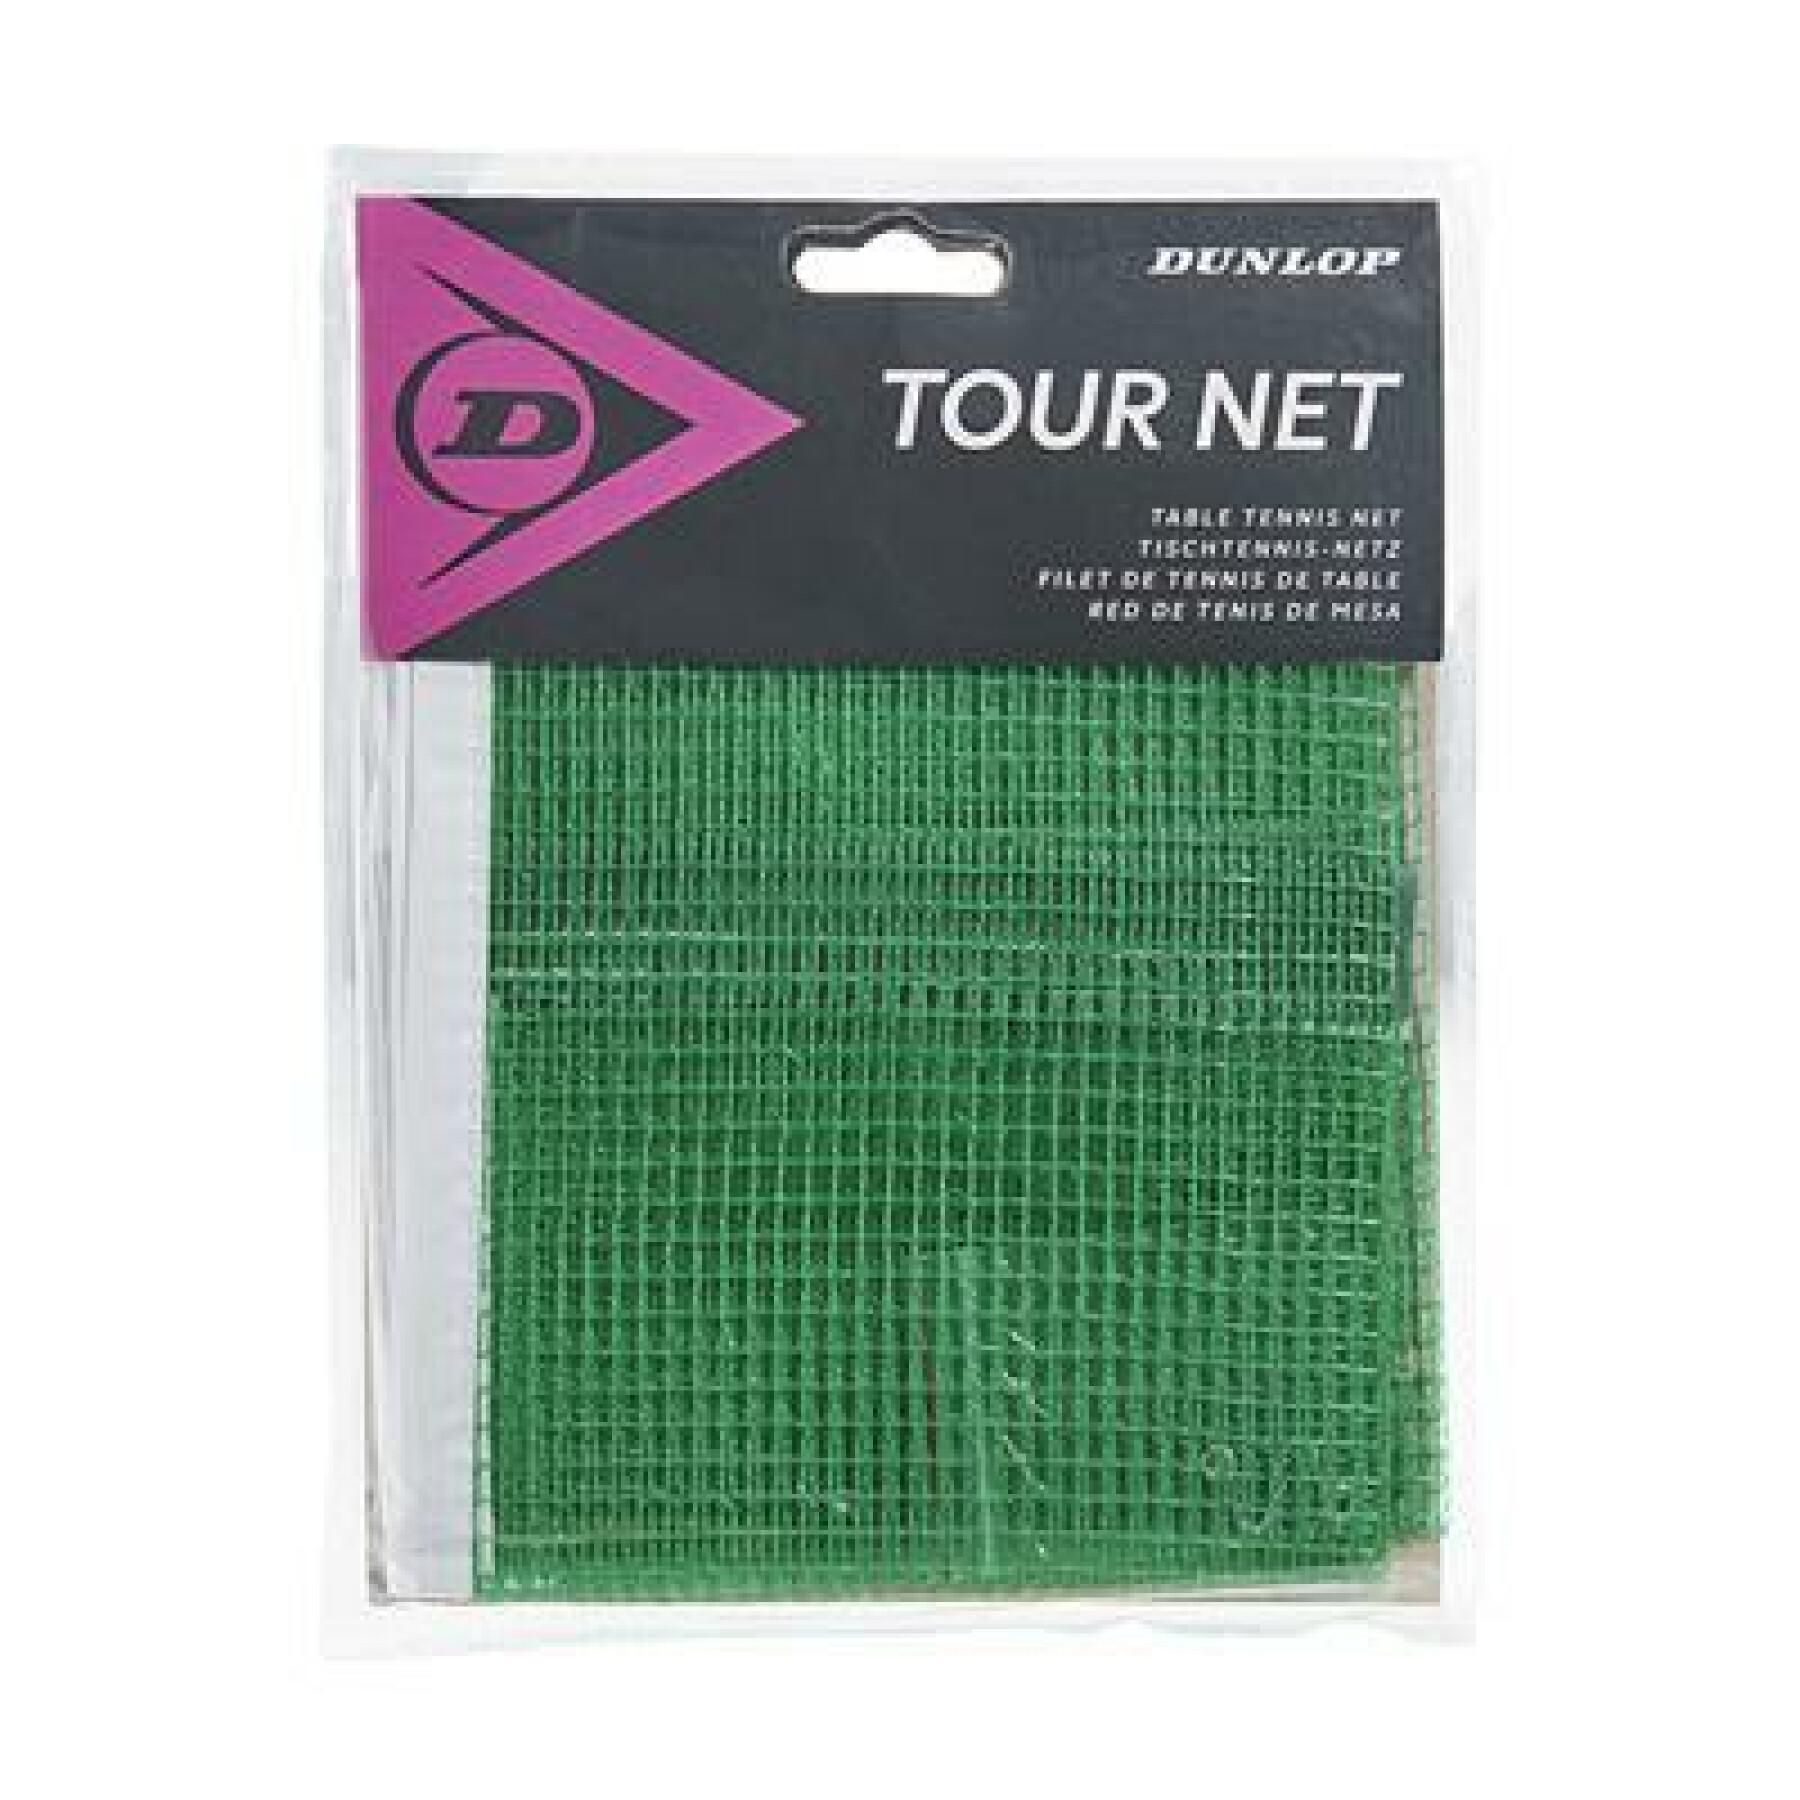 Table tennis net Dunlop tour net